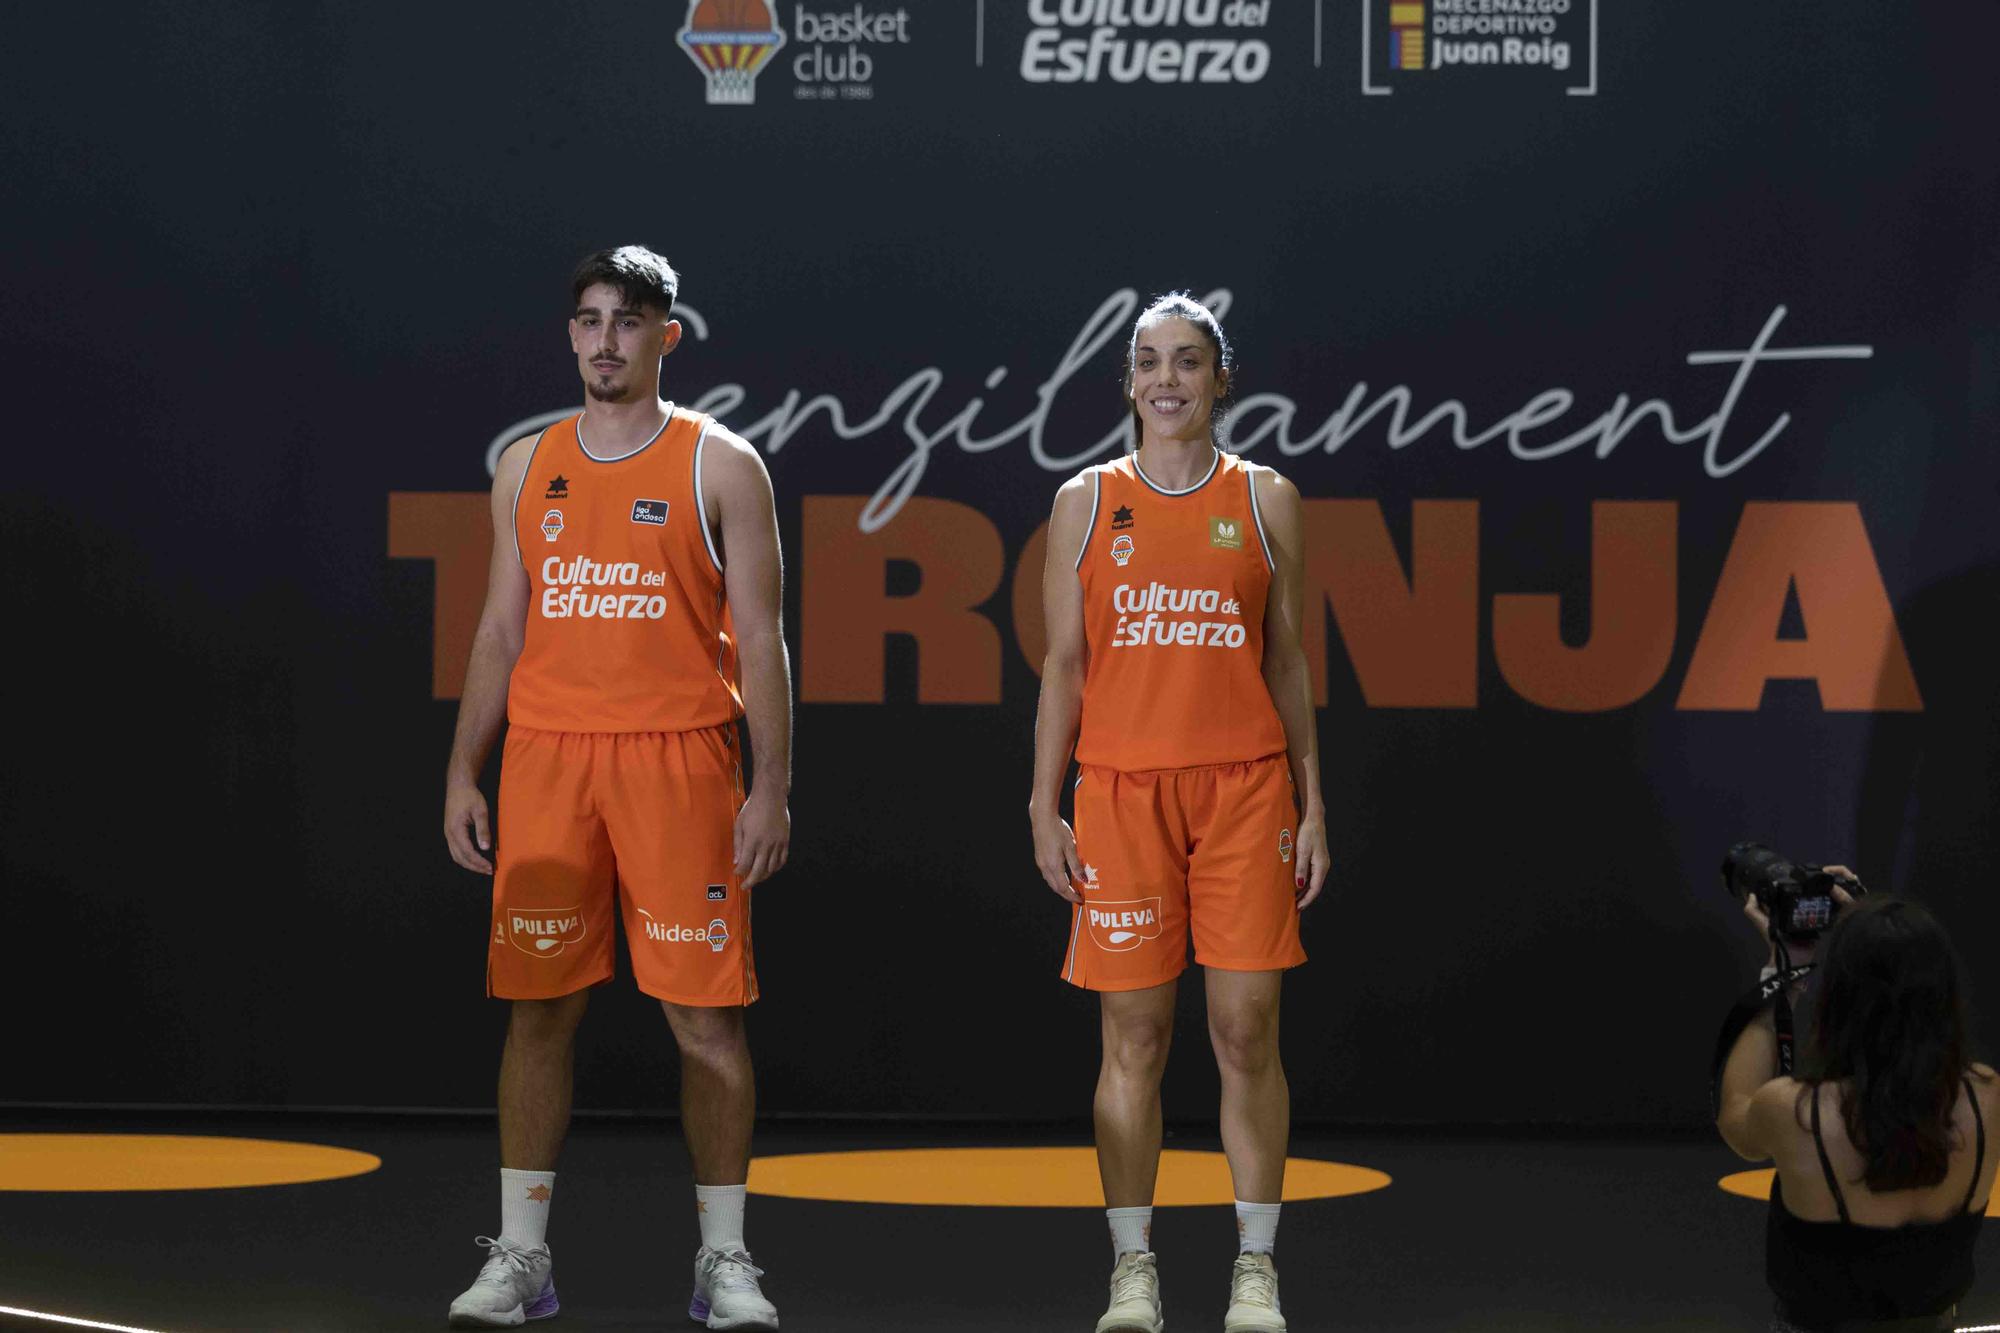 Presentación de los equipajes del Valencia Basket